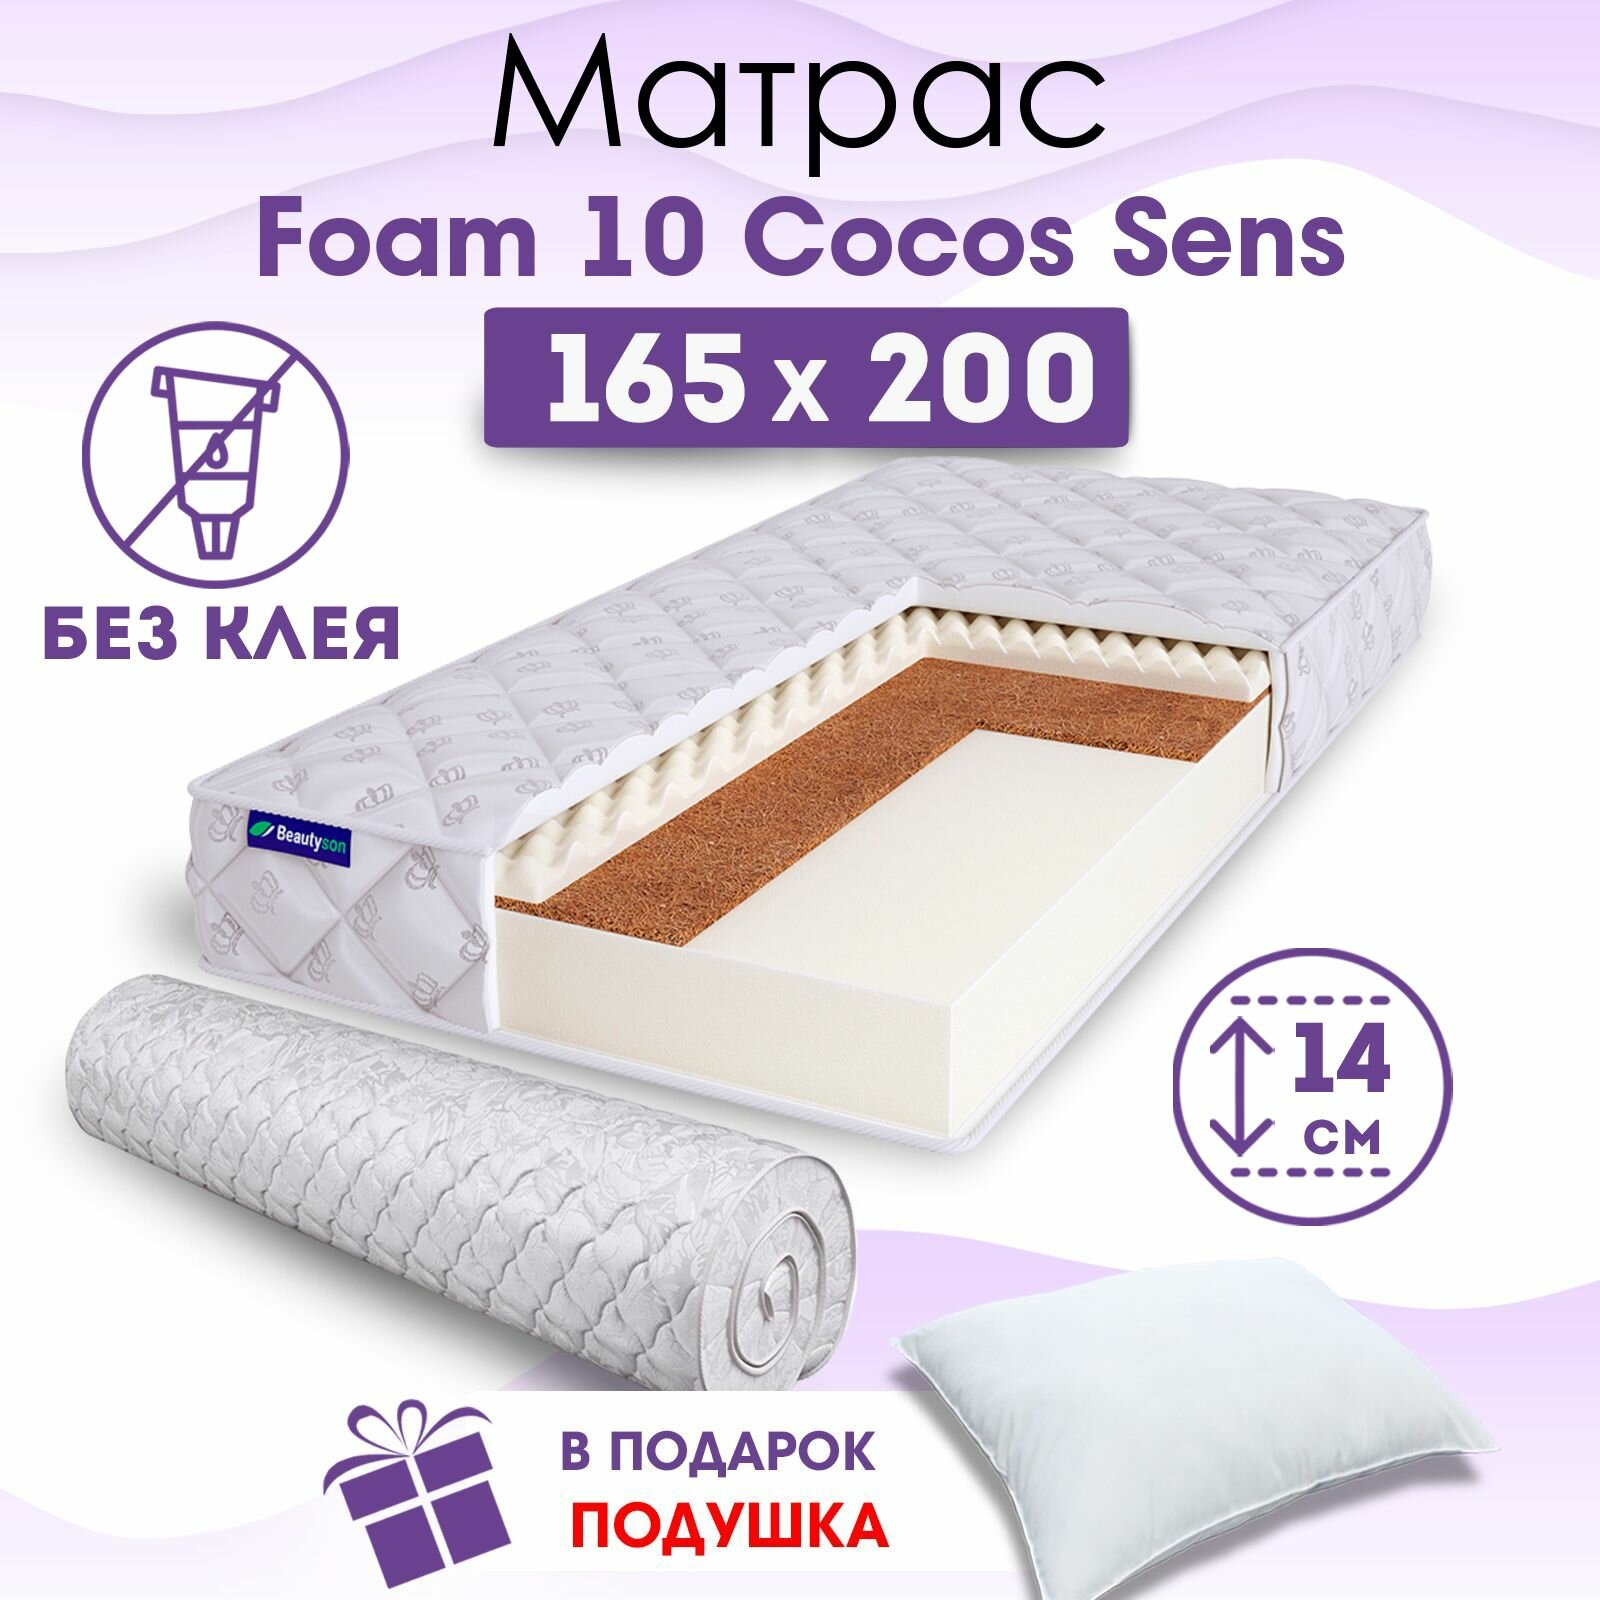 Ортопедический матрас Beautyson Foam 10 Cocos Sens без клея, 165х200, 14 см, беспружинный, двухспальный, на кровать, для дивана, умеренно мягкий